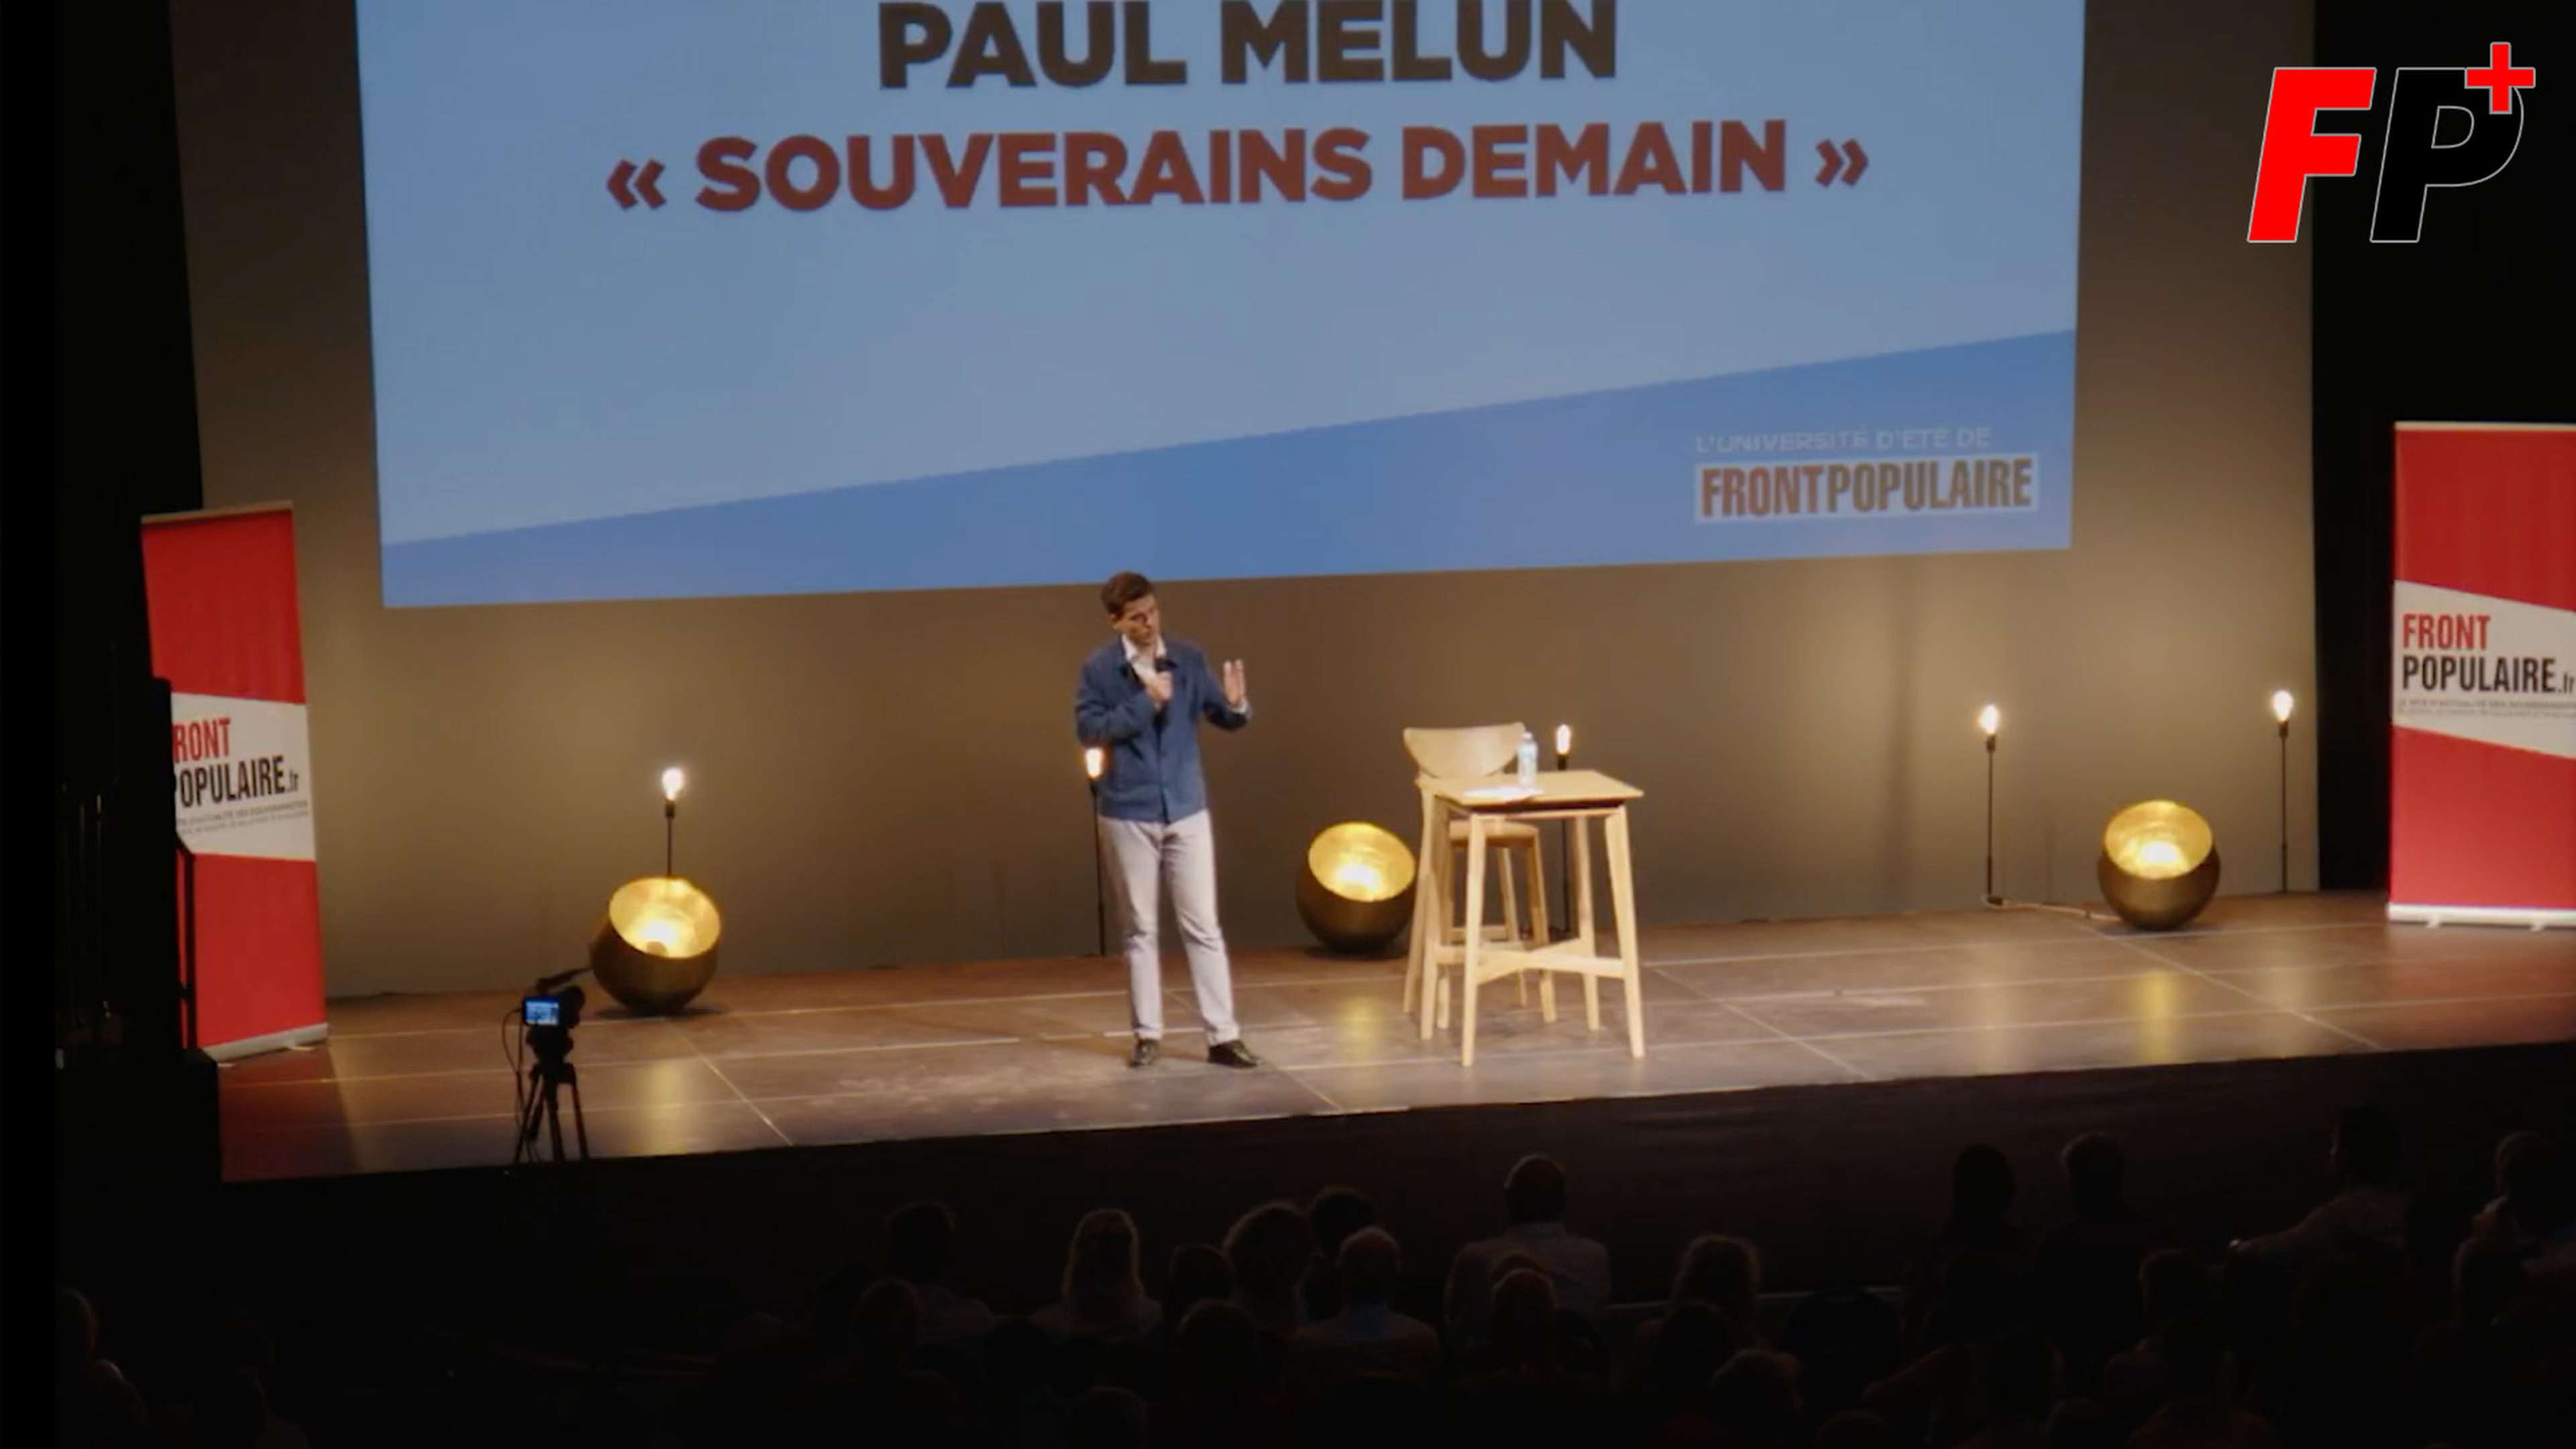 "France, que faire ?", épisode 10 : Paul Melun de Souverains demain